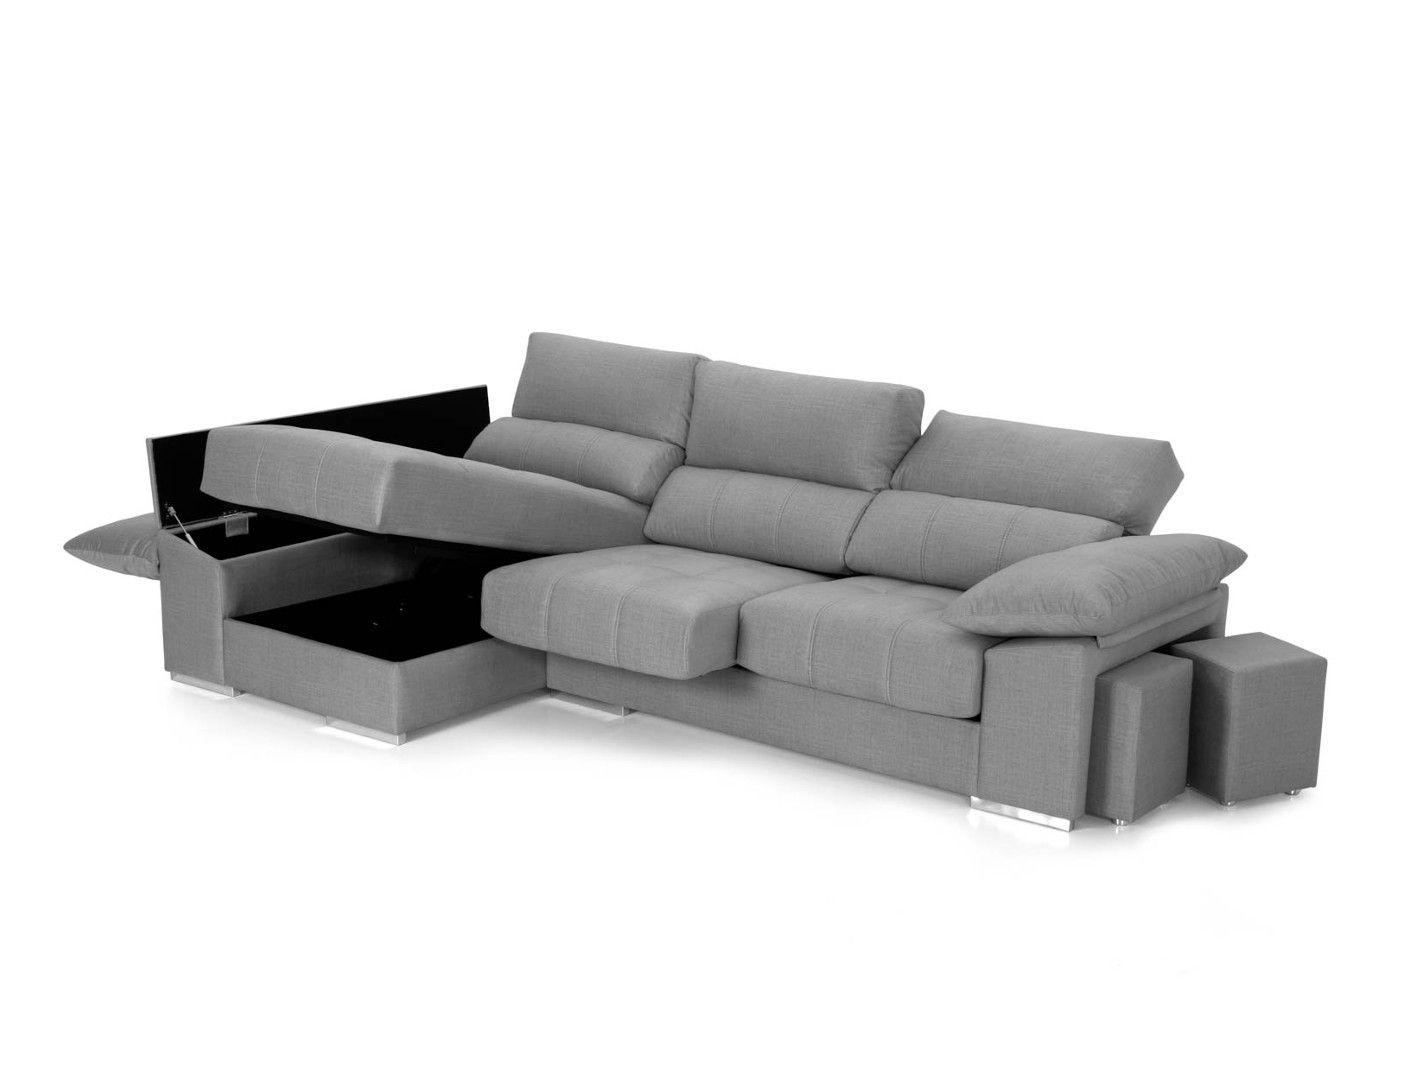 Sofá chaise longue gris claro con asientos deslizantes y brazo puff